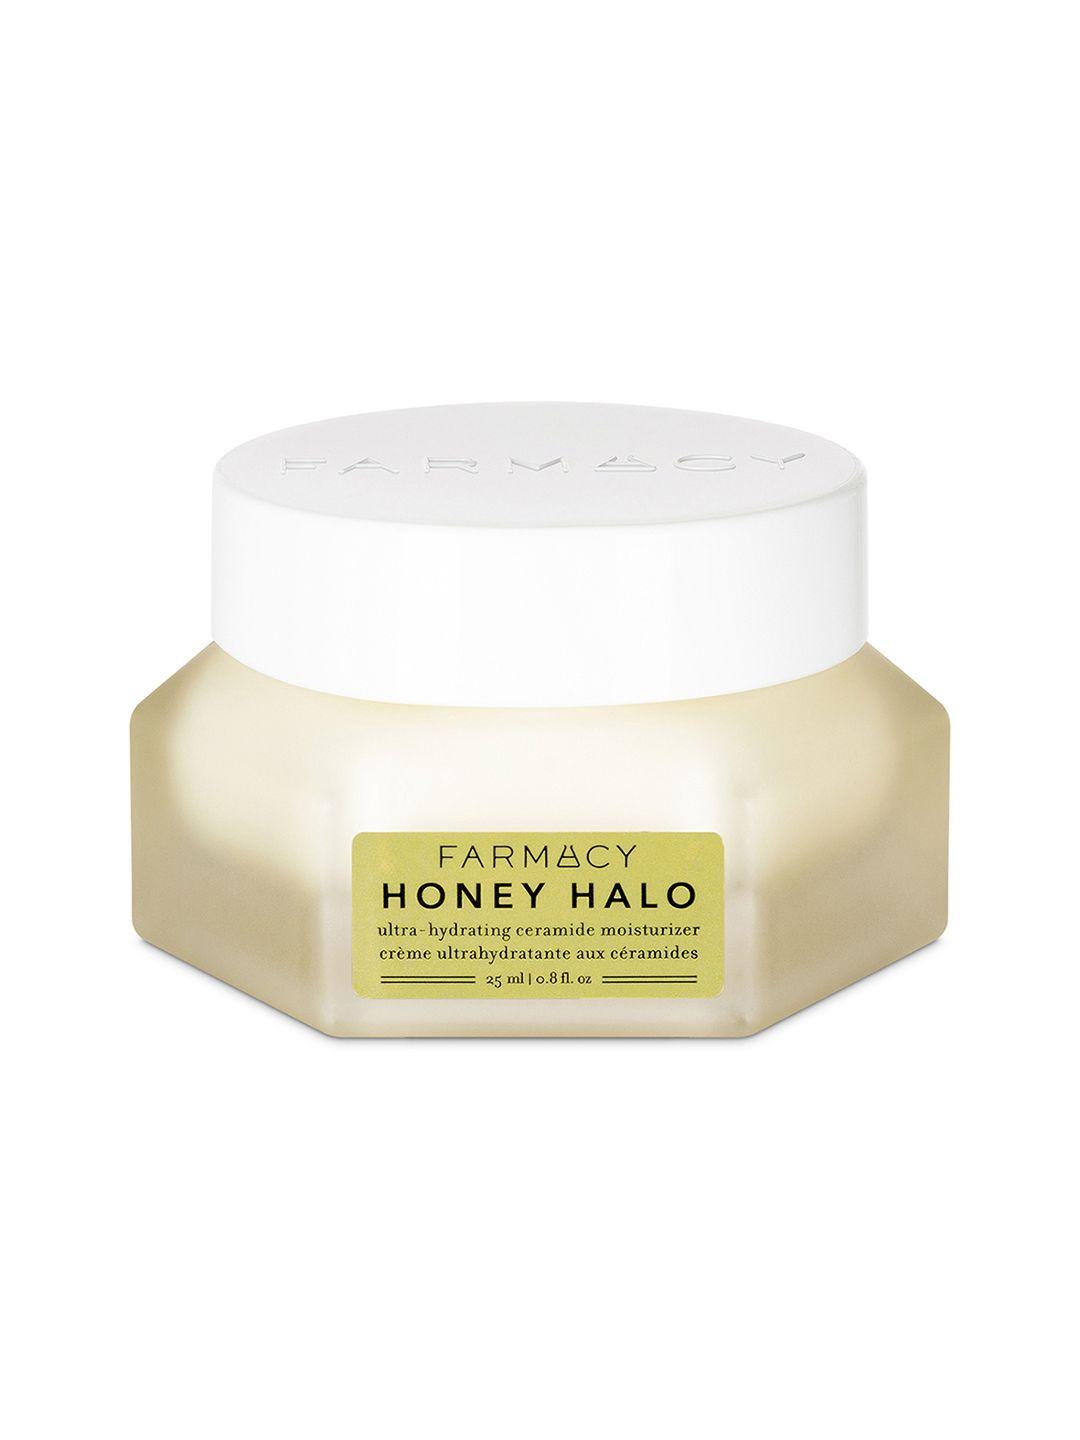 farmacy beauty honey halo ultra hydrating ceramides moisturizer - 25 ml